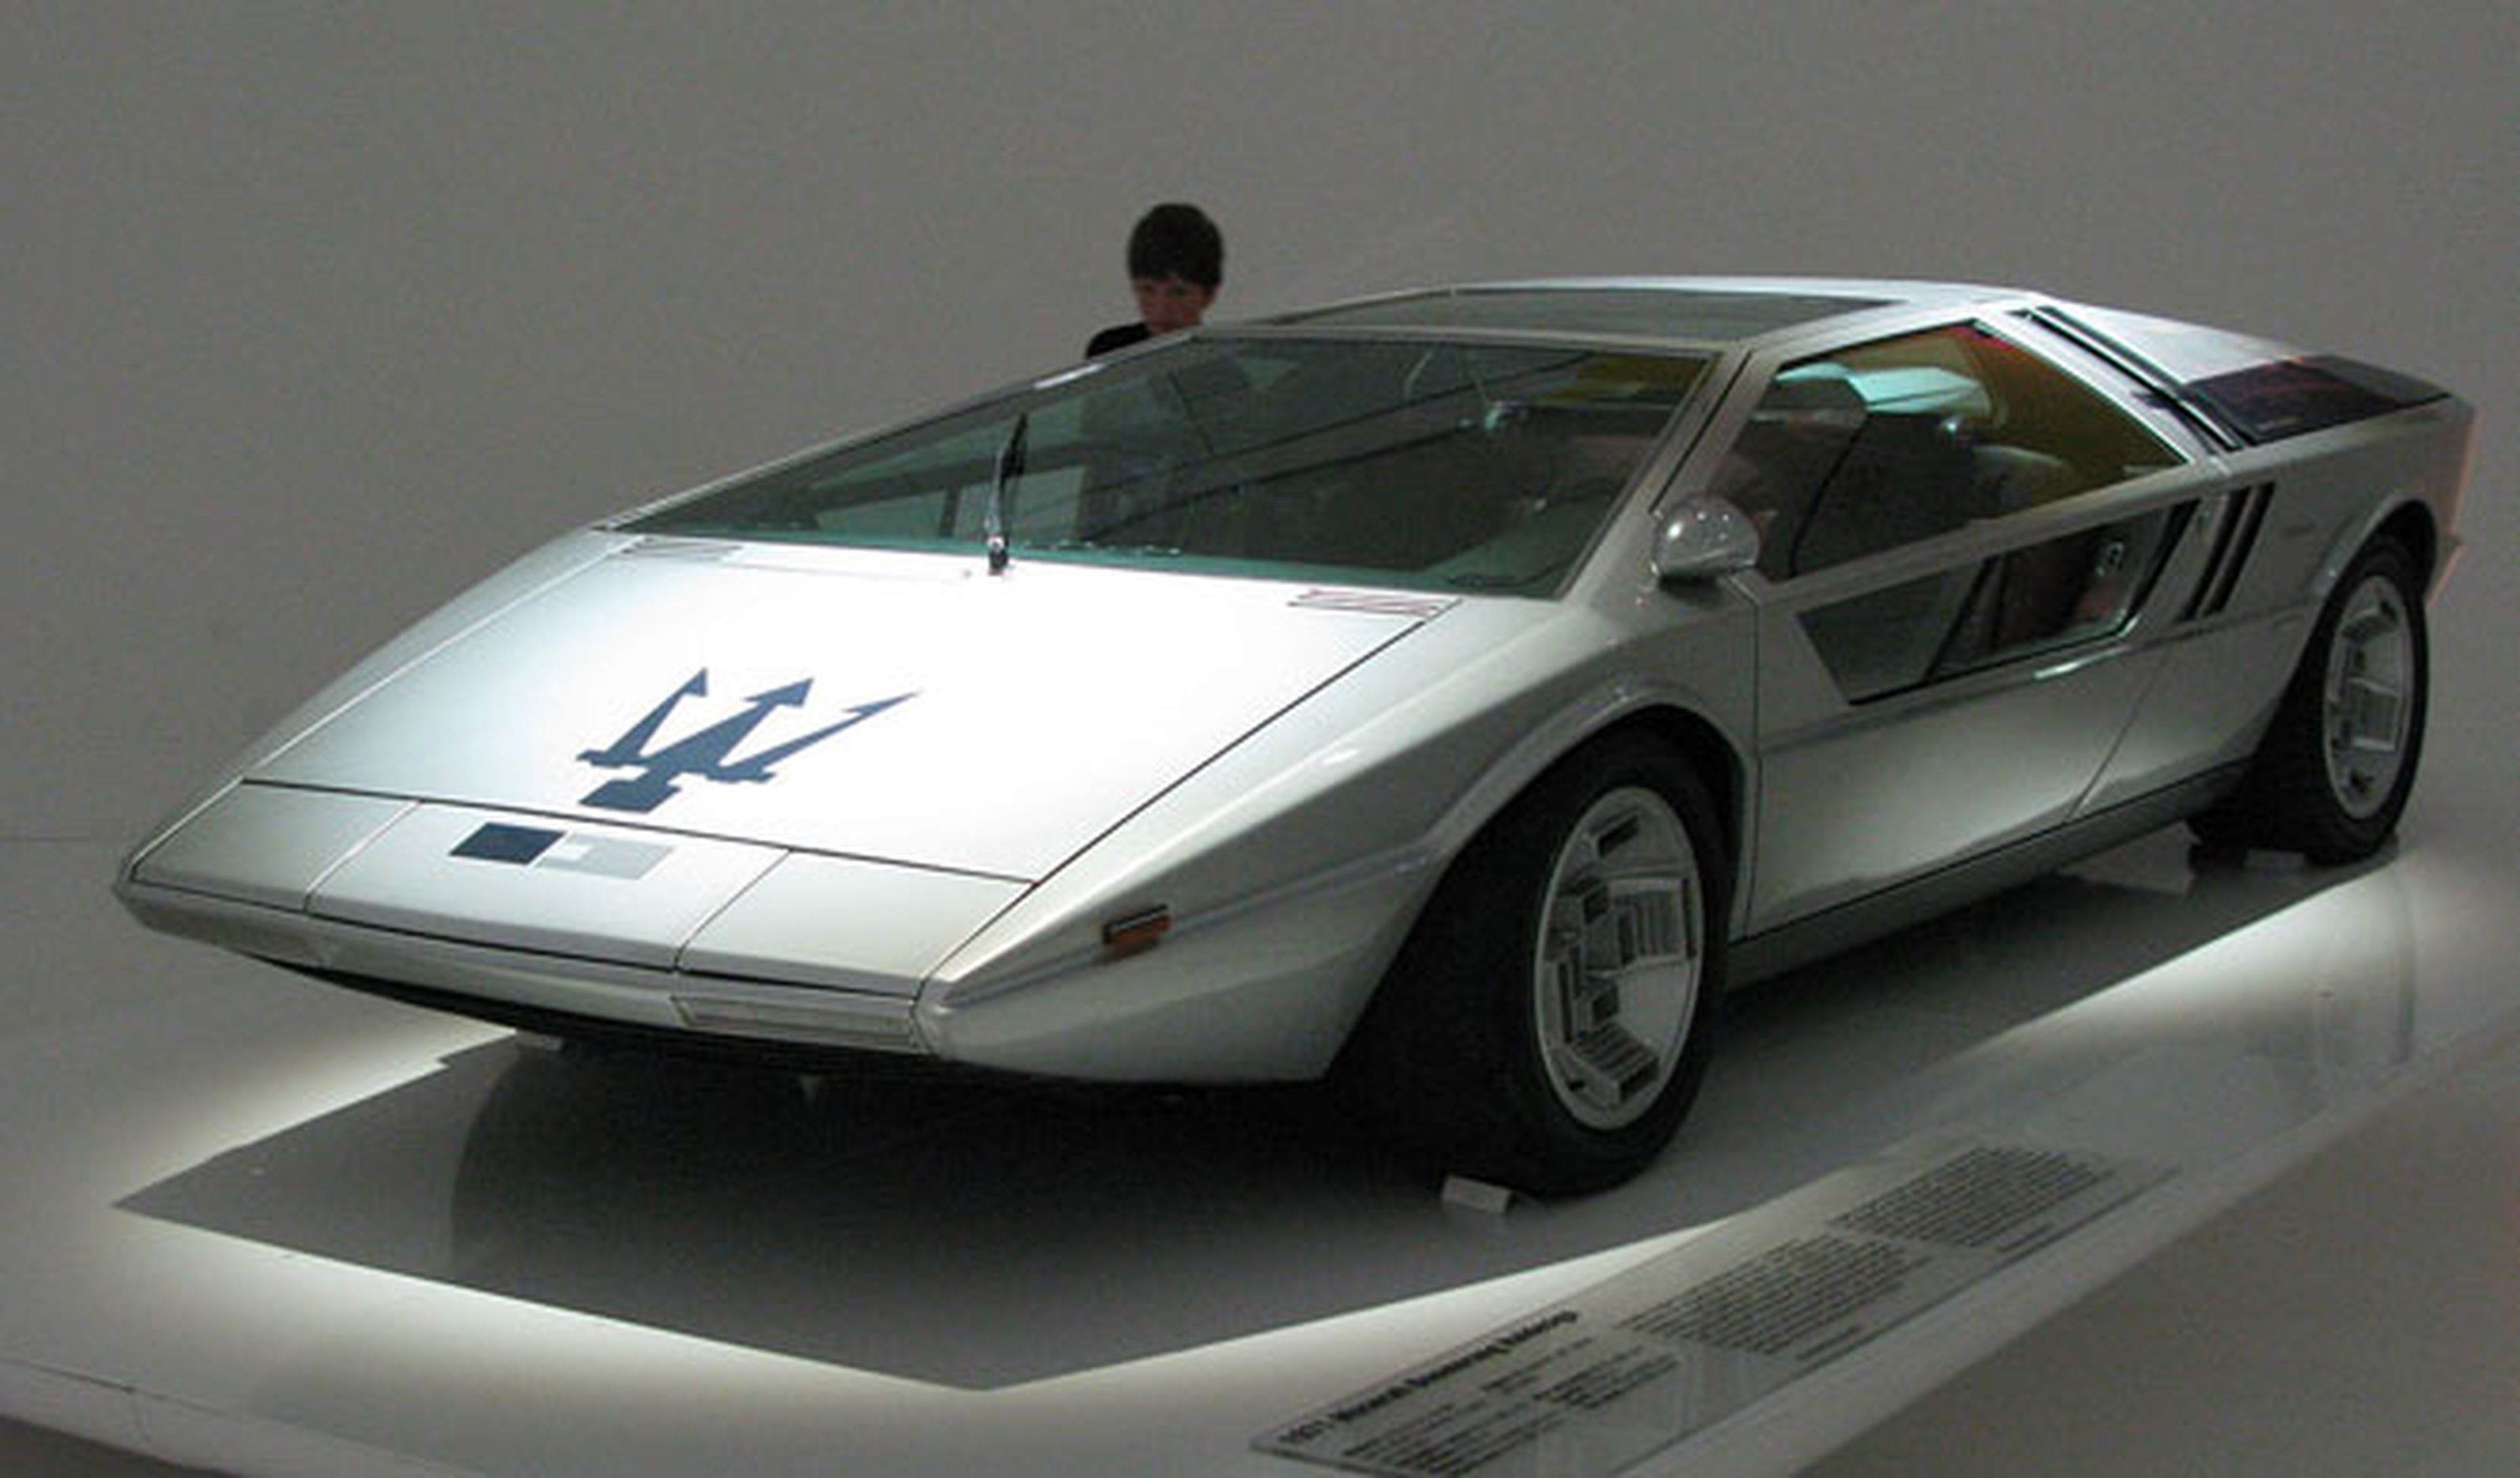 Maserati Boomerang concept car, a subasta